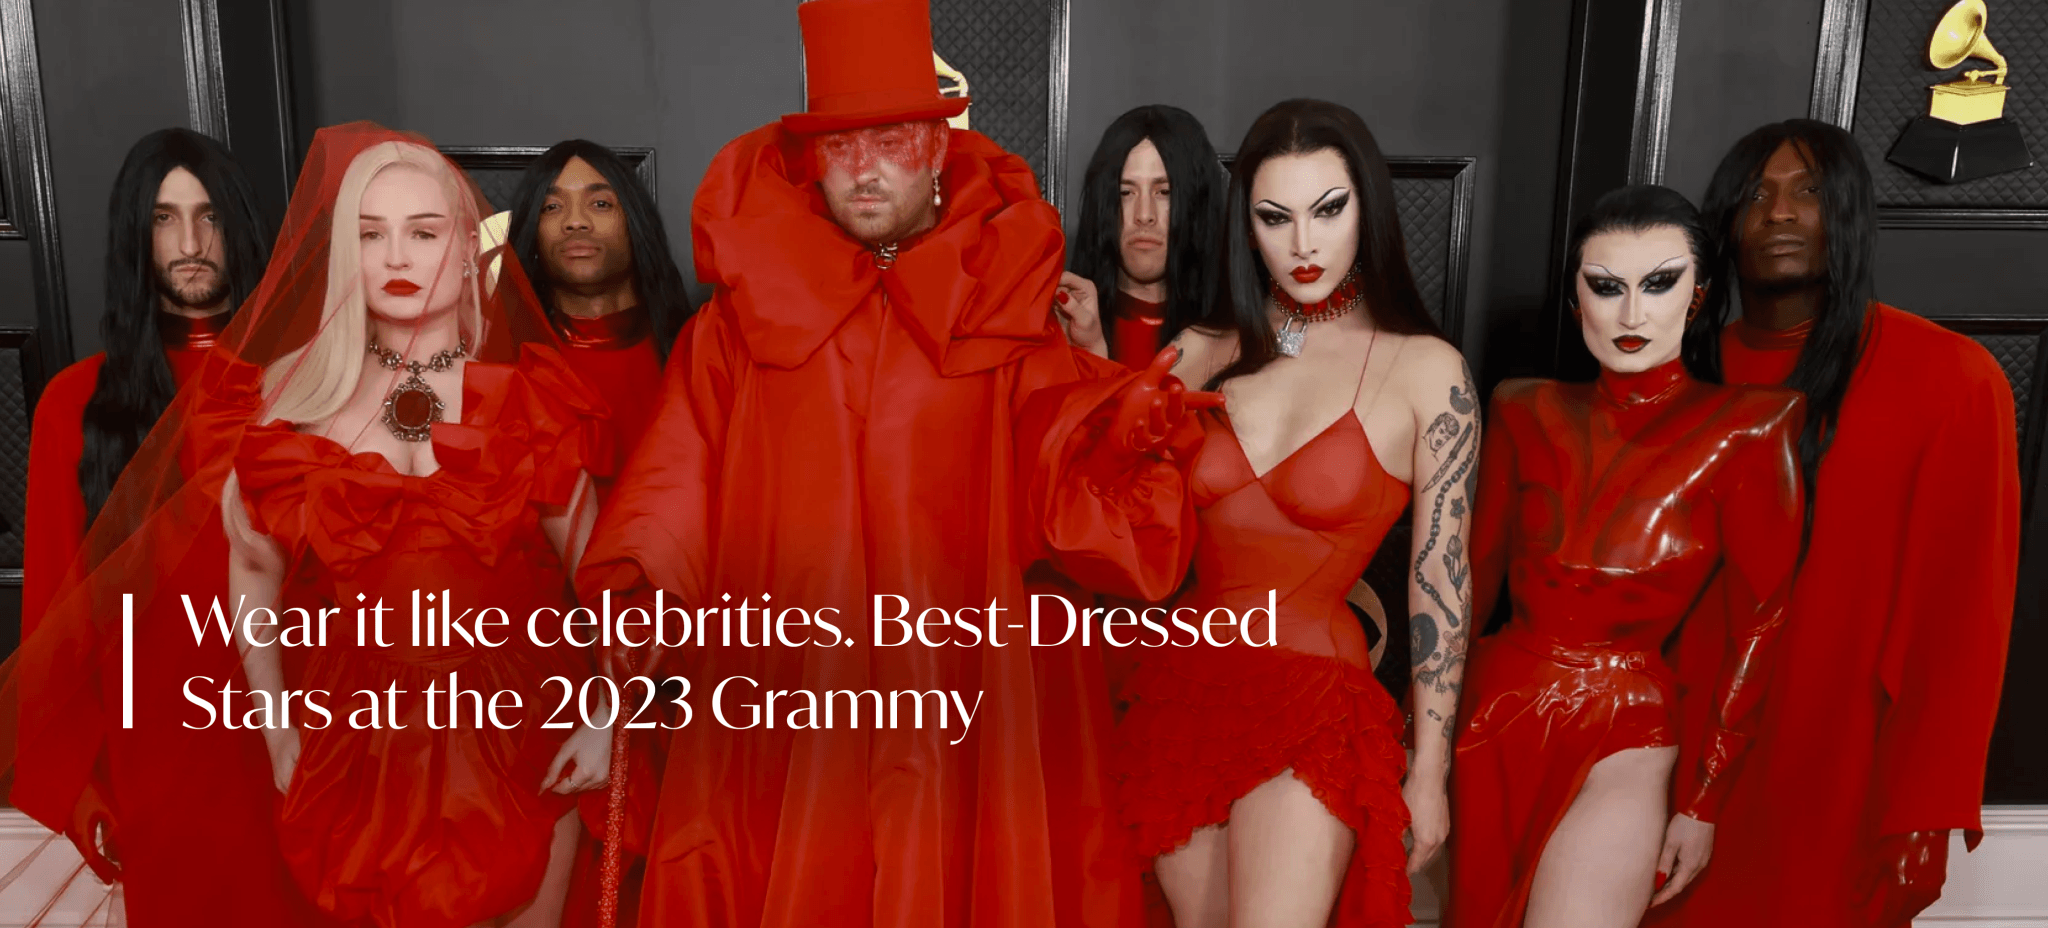 Wear it like celebrities: Grammy 2023 - Milla